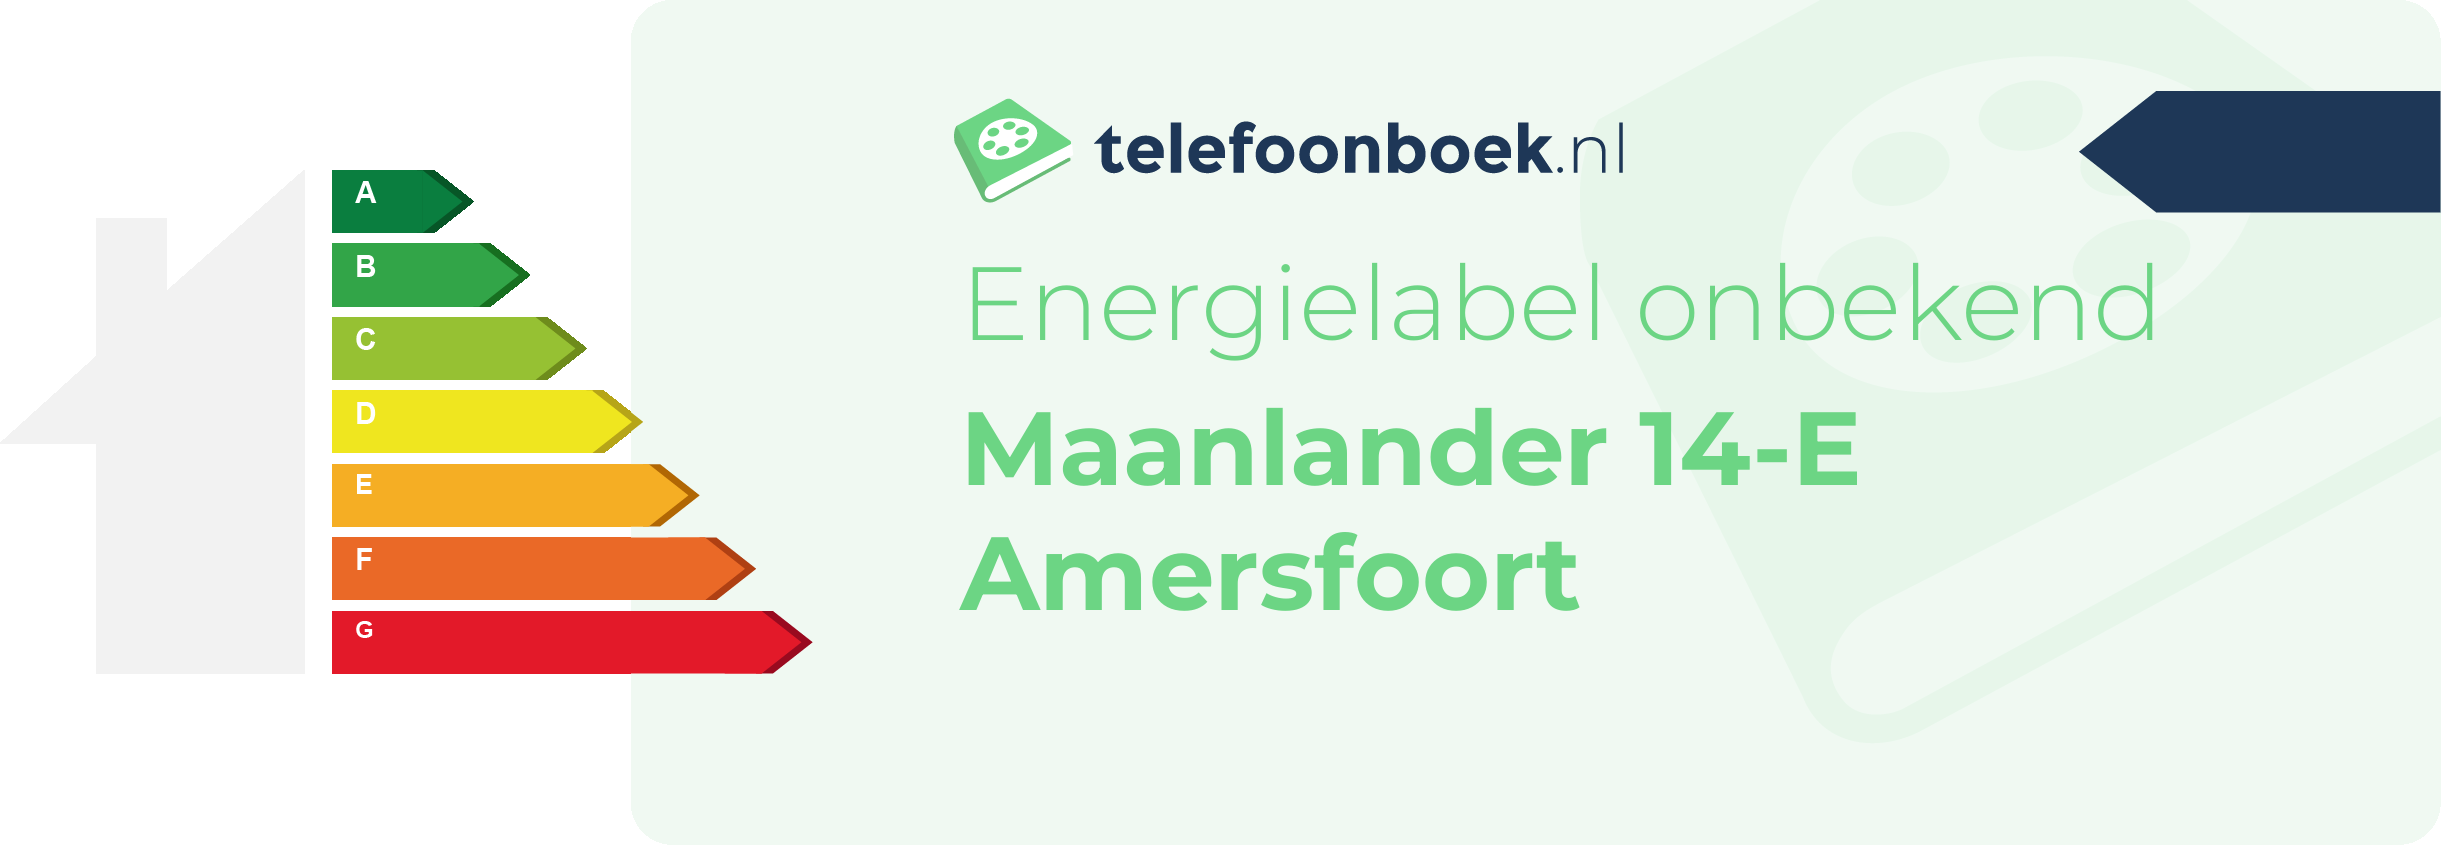 Energielabel Maanlander 14-E Amersfoort